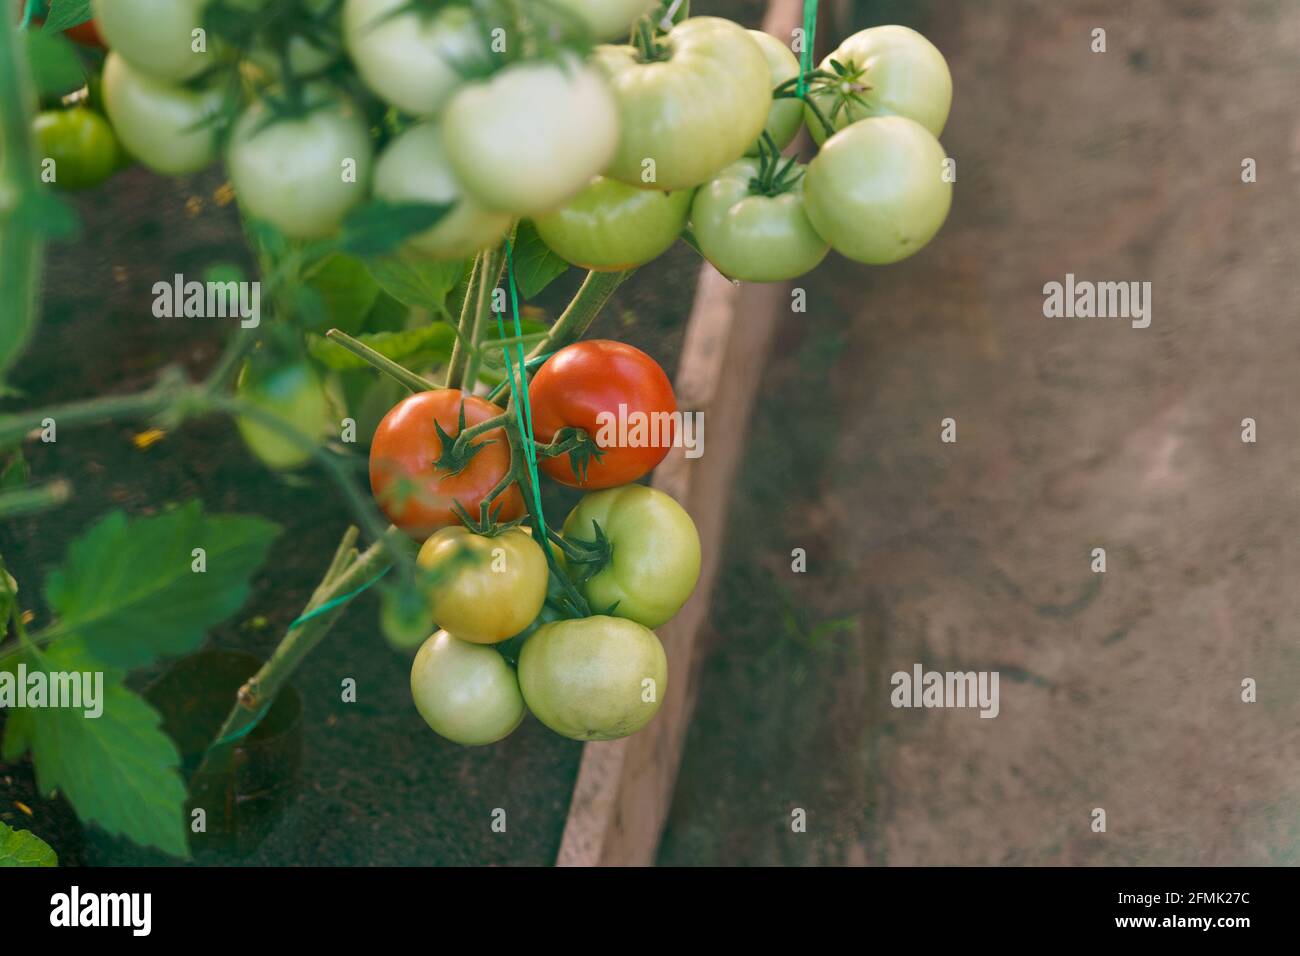 Pomodori verdi, arancioni e rossi che crescono sul ramo con foglie verdi giardinaggio Foto Stock